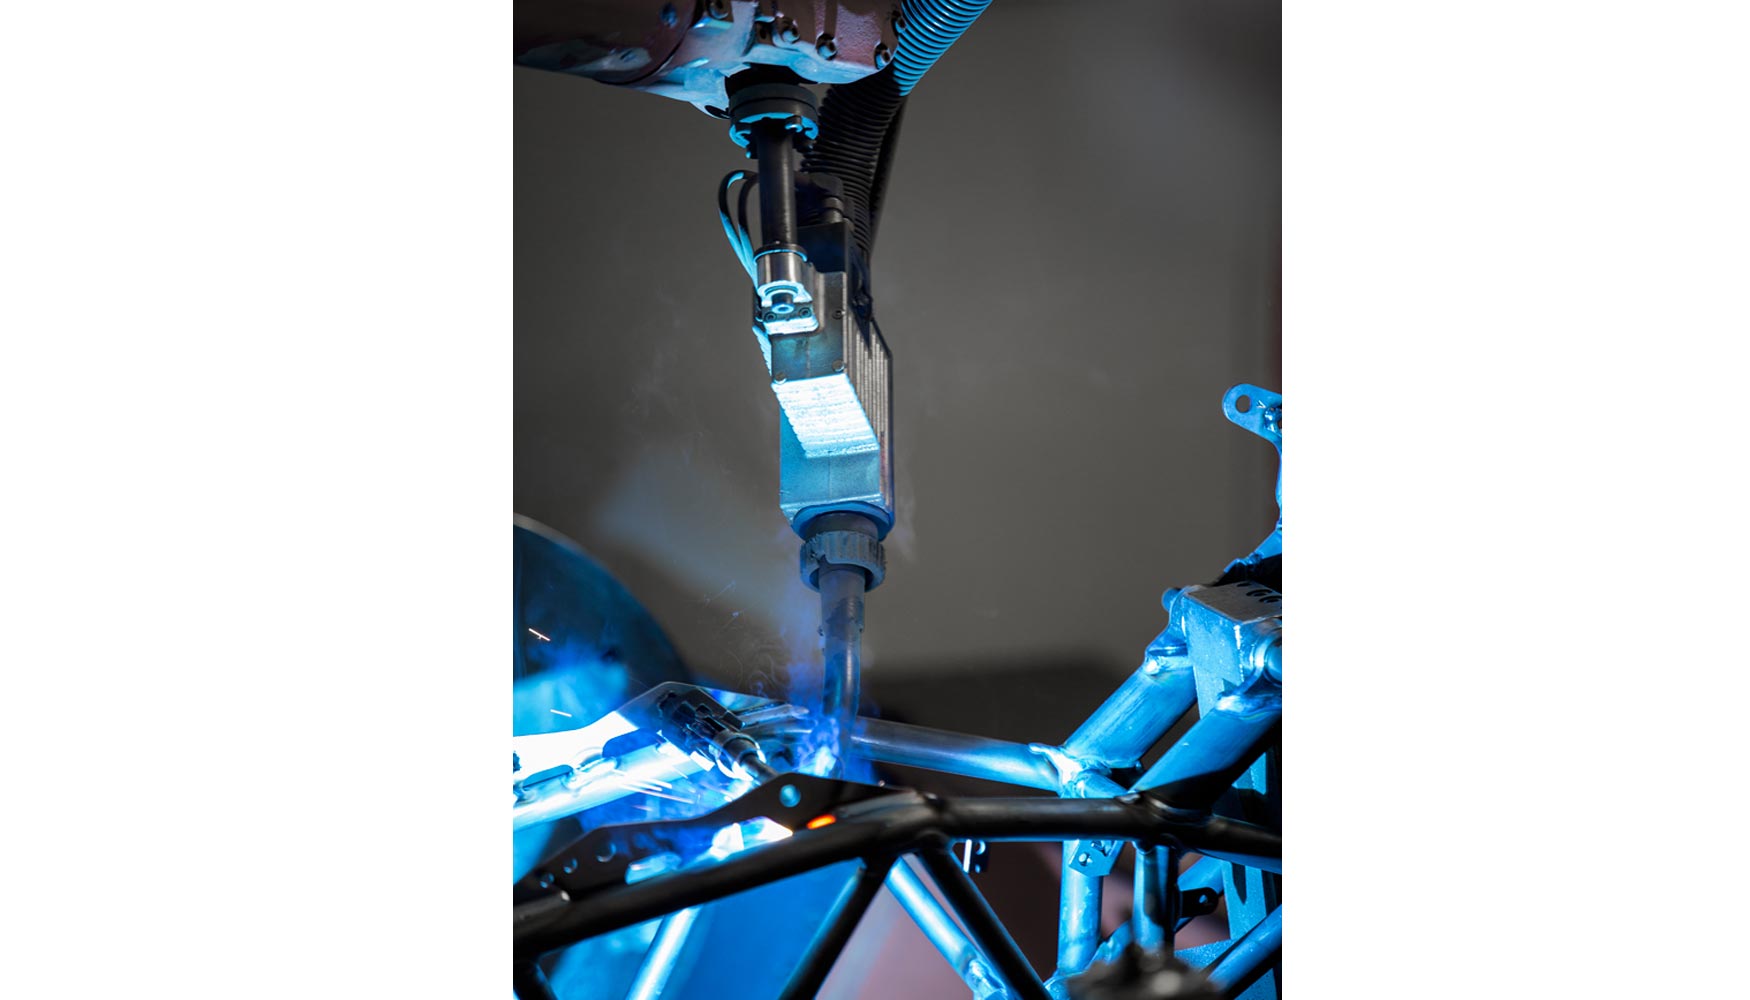 El 98% del cordn de soldadura del bastidor de una moto es soldado por robots. Fotos: Fronius International GmbH